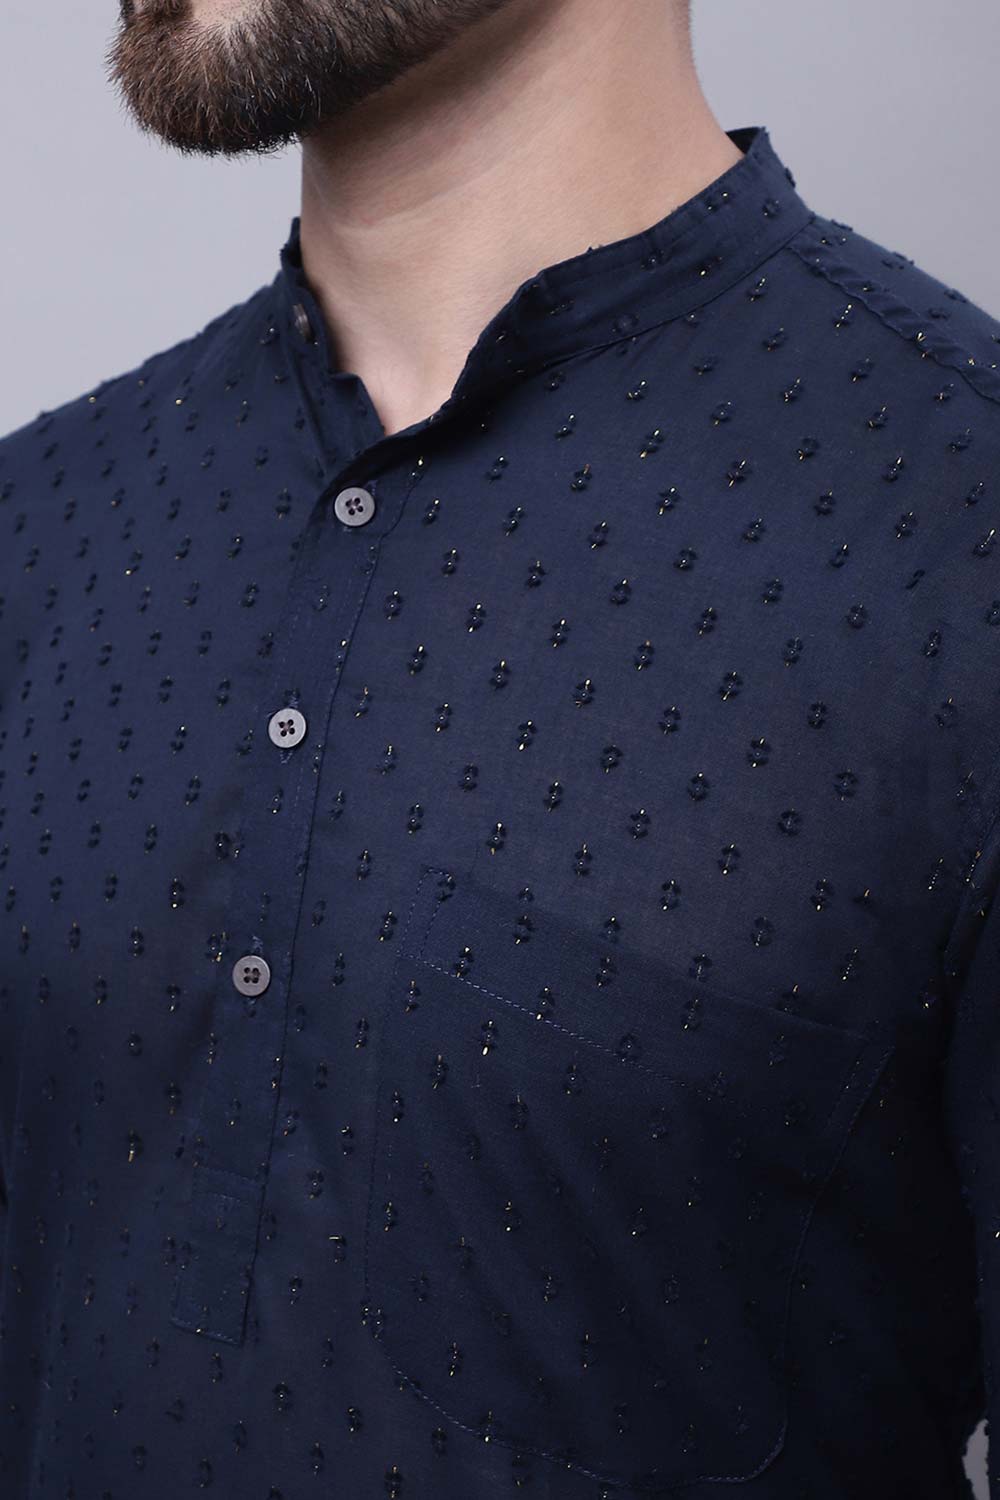 Buy Men's Blue Cotton Self Design Long Kurta Top Online - Zoom In